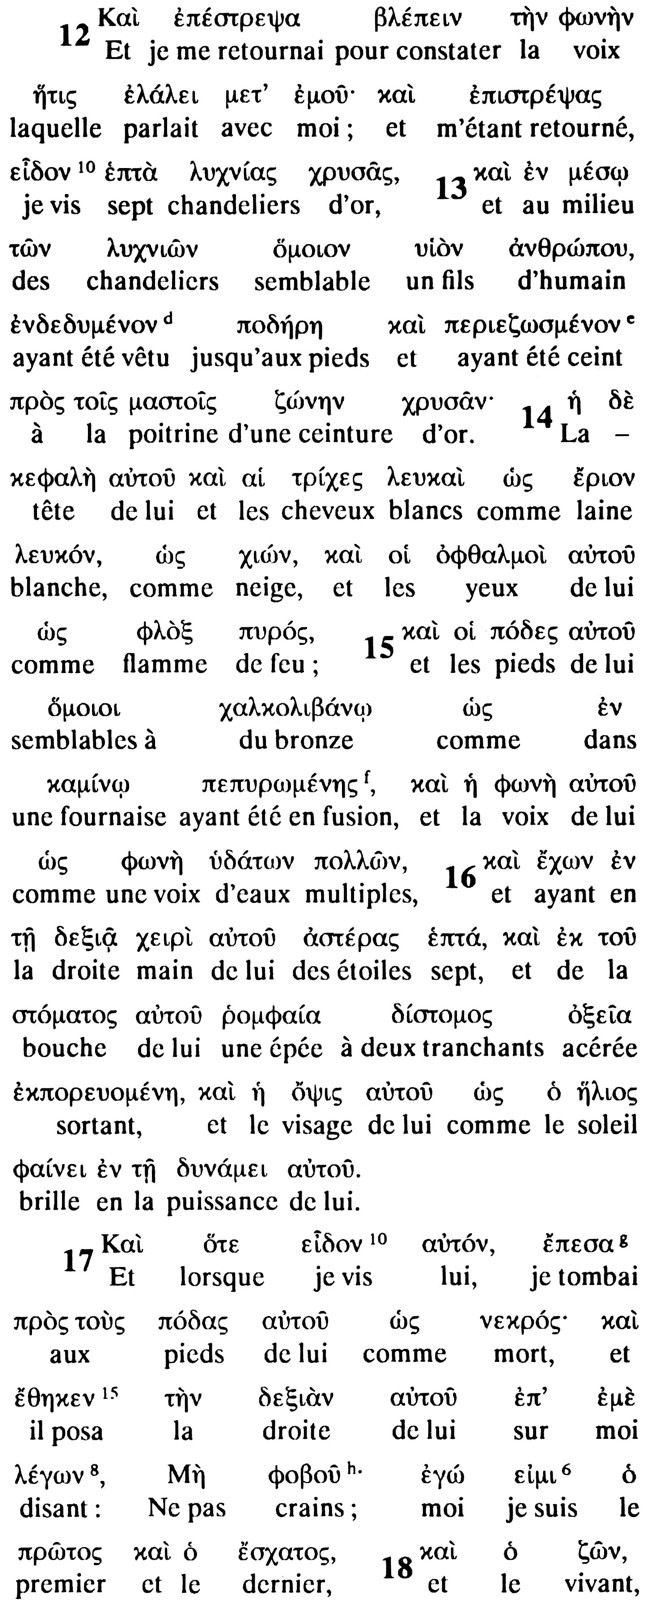 texte d'apocalypse 1 en grec et français